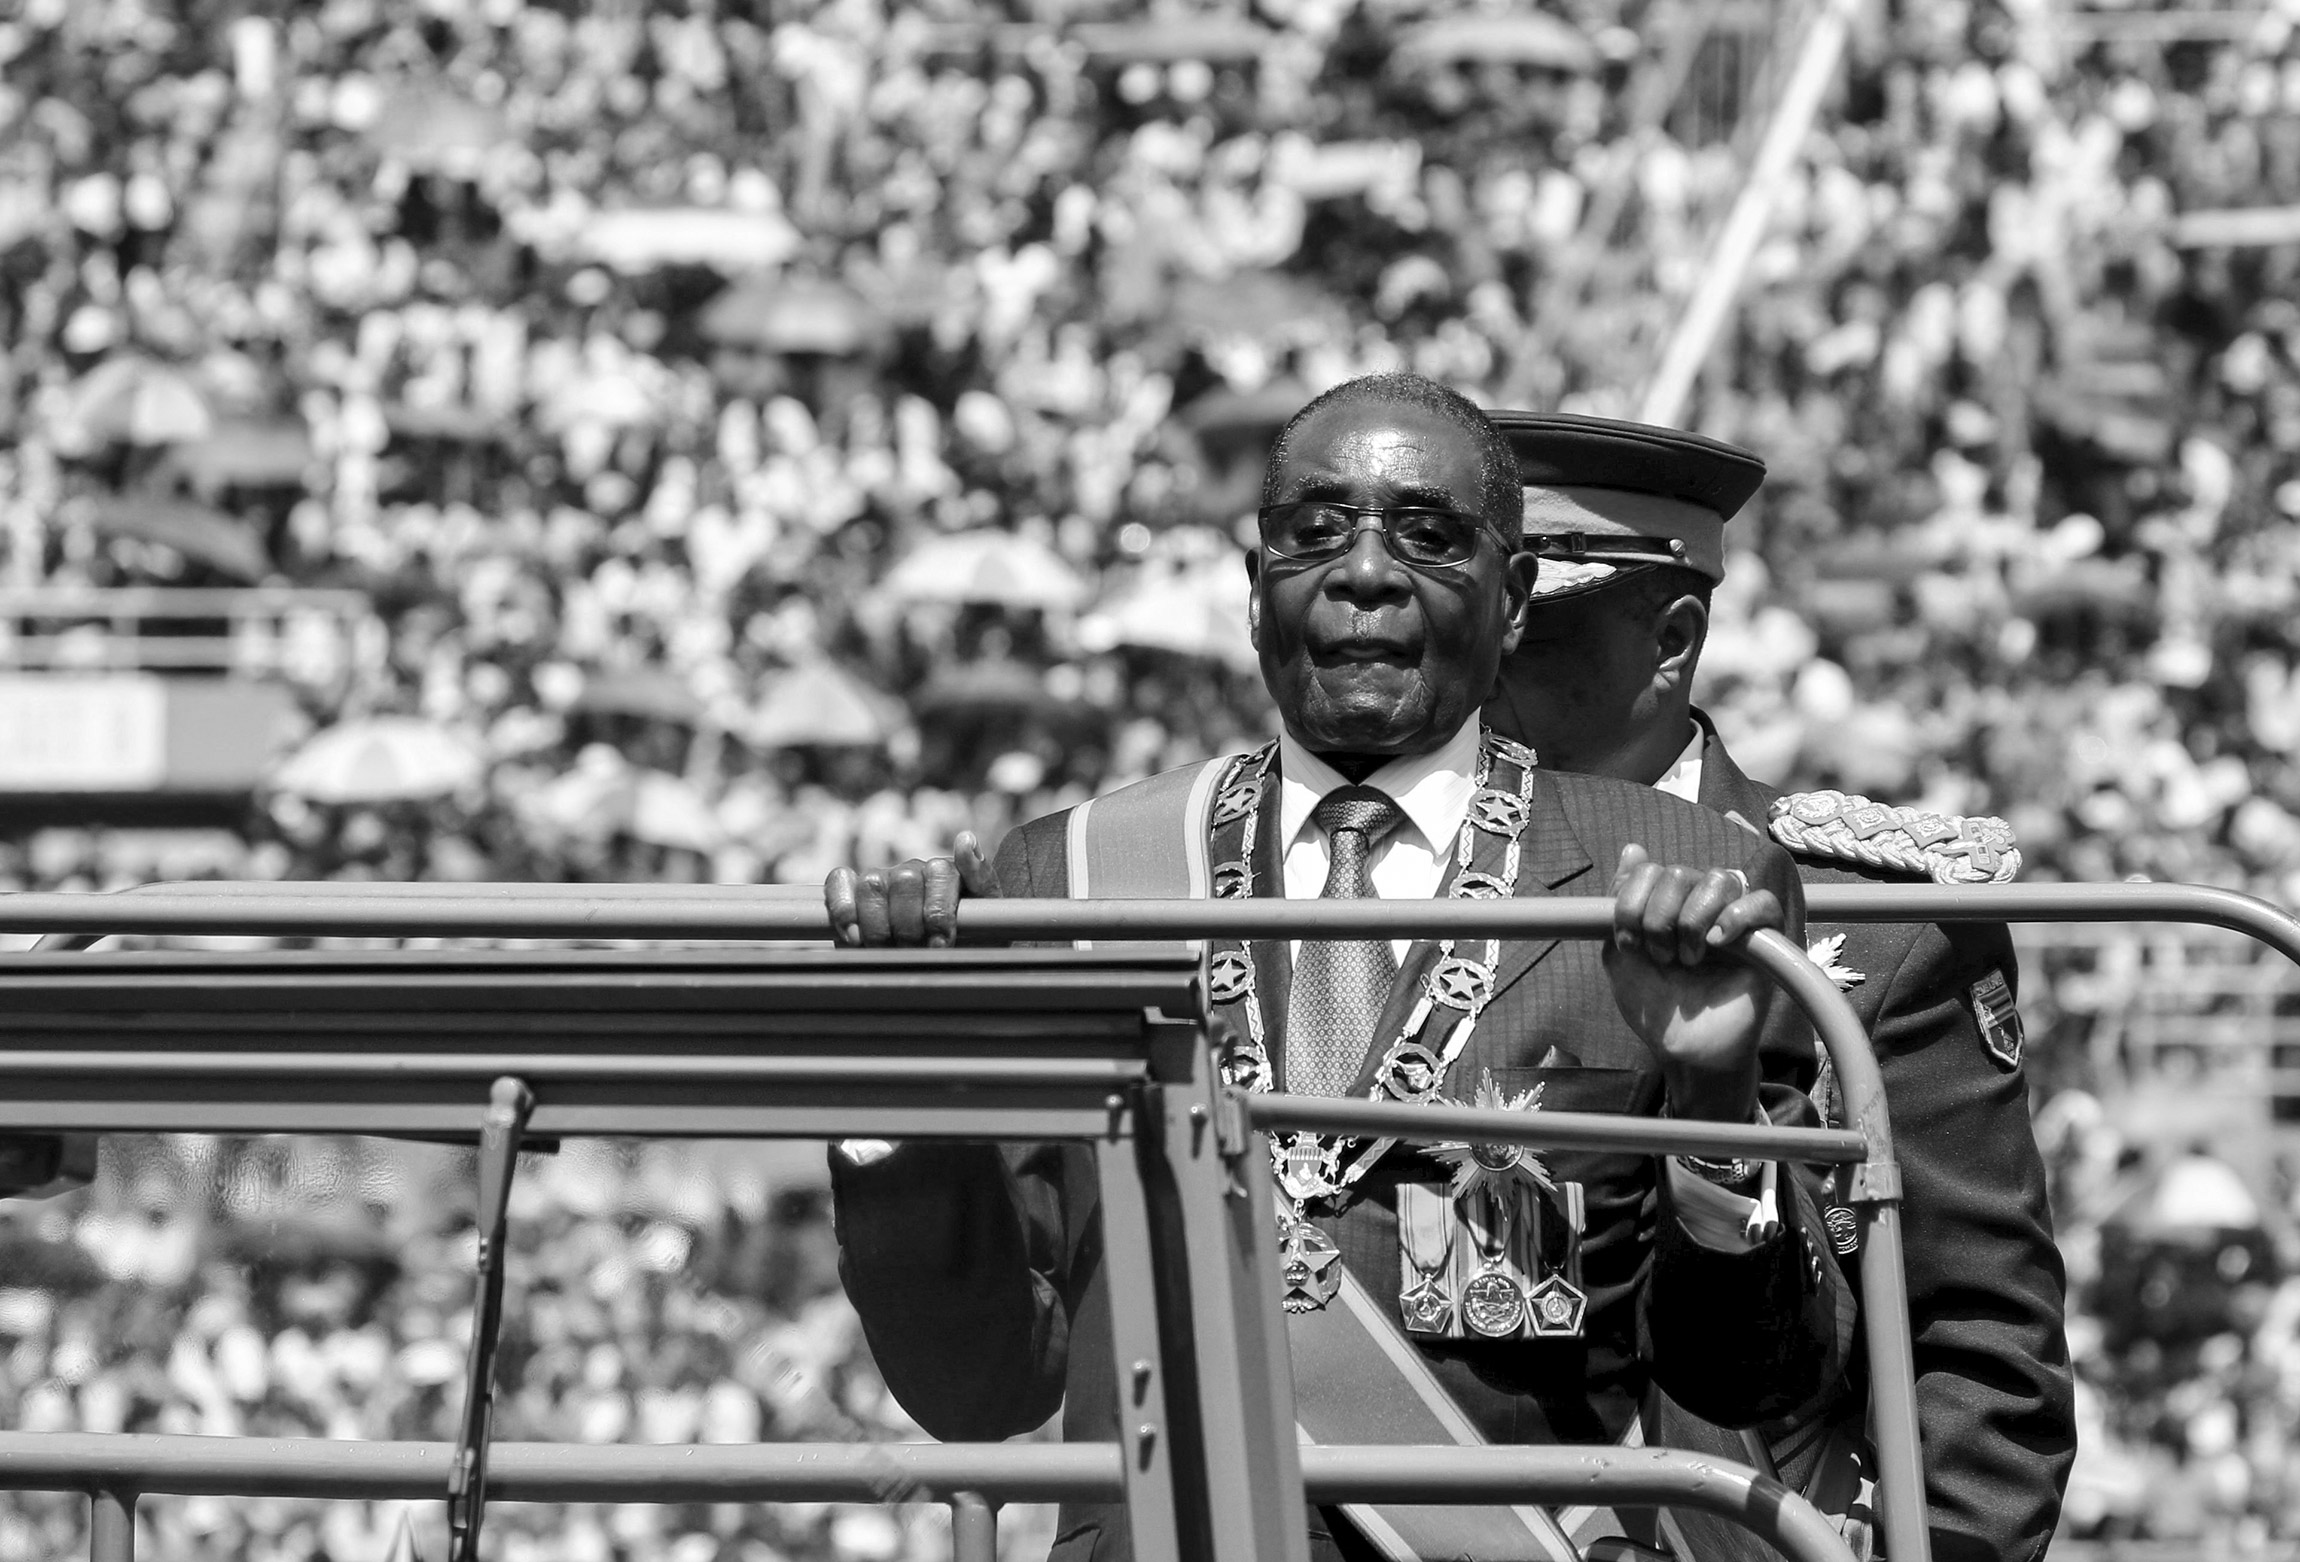 В конце 1950-х школьный учитель Роберт Мугабе начал интересоваться политикой. Отсидев почти десять лет в тюрьме за борьбу с колониализмом, он прямо в заключении основал партию, которая в 1980 году одержала победу на парламентских выборах в Зимбабве, а сам Мугабе стал премьером страны, получившей независимость. В ноябре 1987 года он стал президентом и занимал эту должность 37 лет. Мугабе за время своего правления получил репутацию диктатора: он изымал земли у белых фермеров, при нем притесняли оппонентов власти, выборы, по словам международных наблюдателей, проходили с махинациями. В 2002 году Зимбабве попала под санкции, попытки регулировать экономику с помощью военных и замораживания цен привели к гиперинфляции. Мугабе потерял власть в ходе военного переворота.

6 сентября он умер в возрасте 95 лет.

Читать больше
&nbsp;
